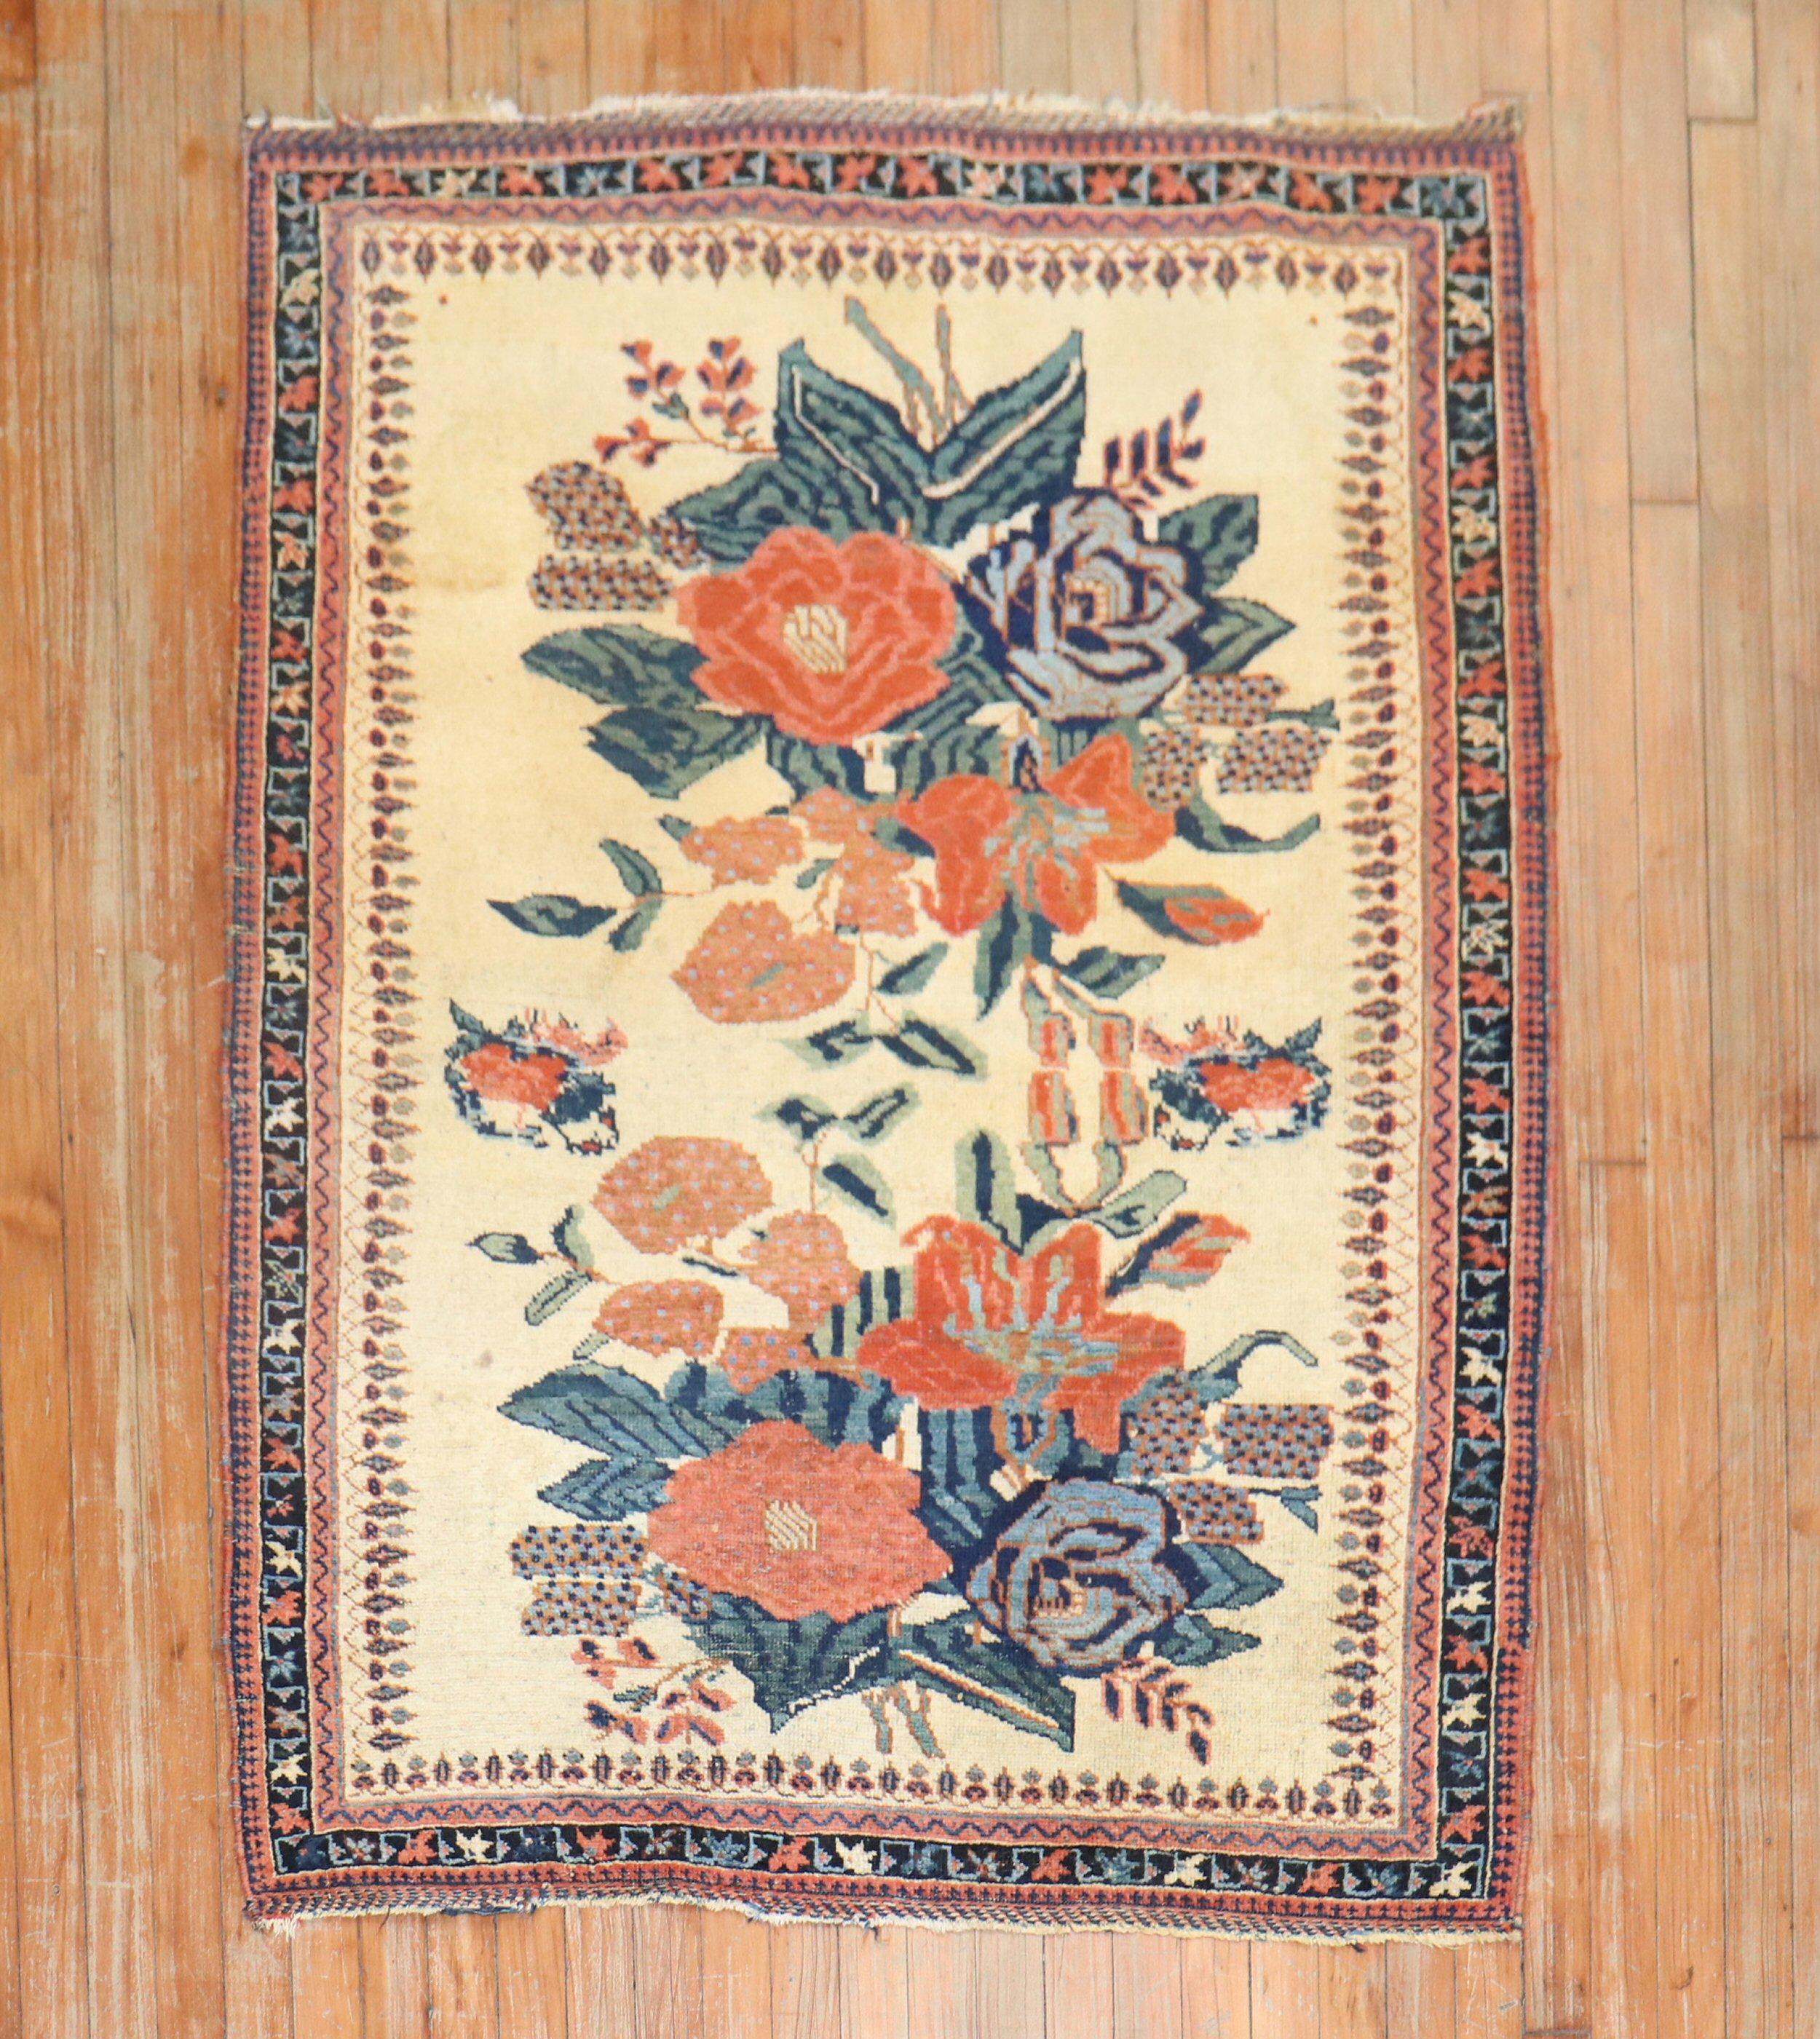 Persischer Afshar-Stammesteppich aus dem frühen 20. Jahrhundert mit einem großen floralen Muster auf einem elfenbeinfarbenen Feld

Abmessungen: 3'9 Zoll x 4'10 Zoll.